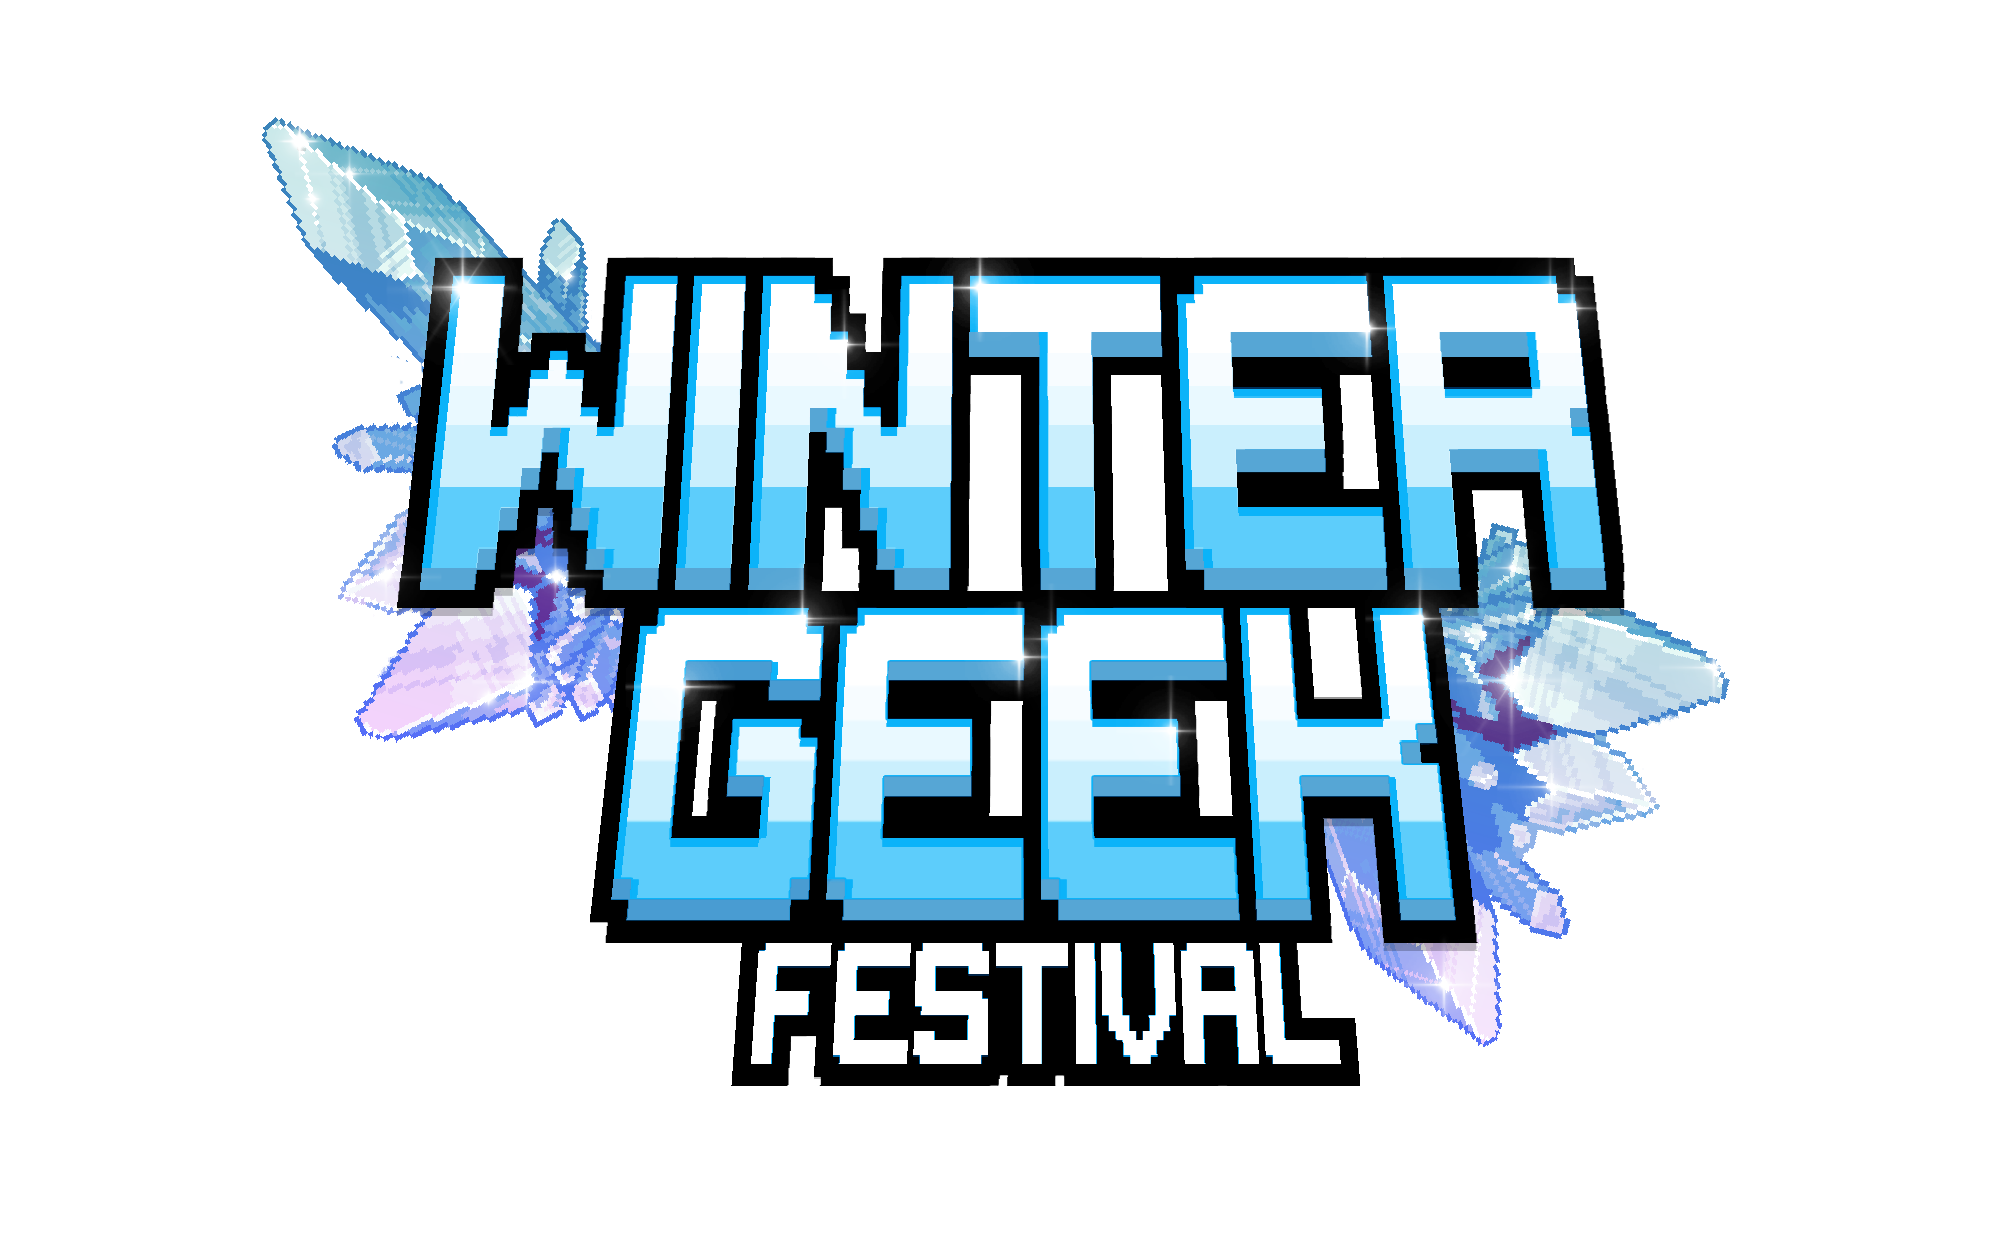 Winter Geek Festival 2023